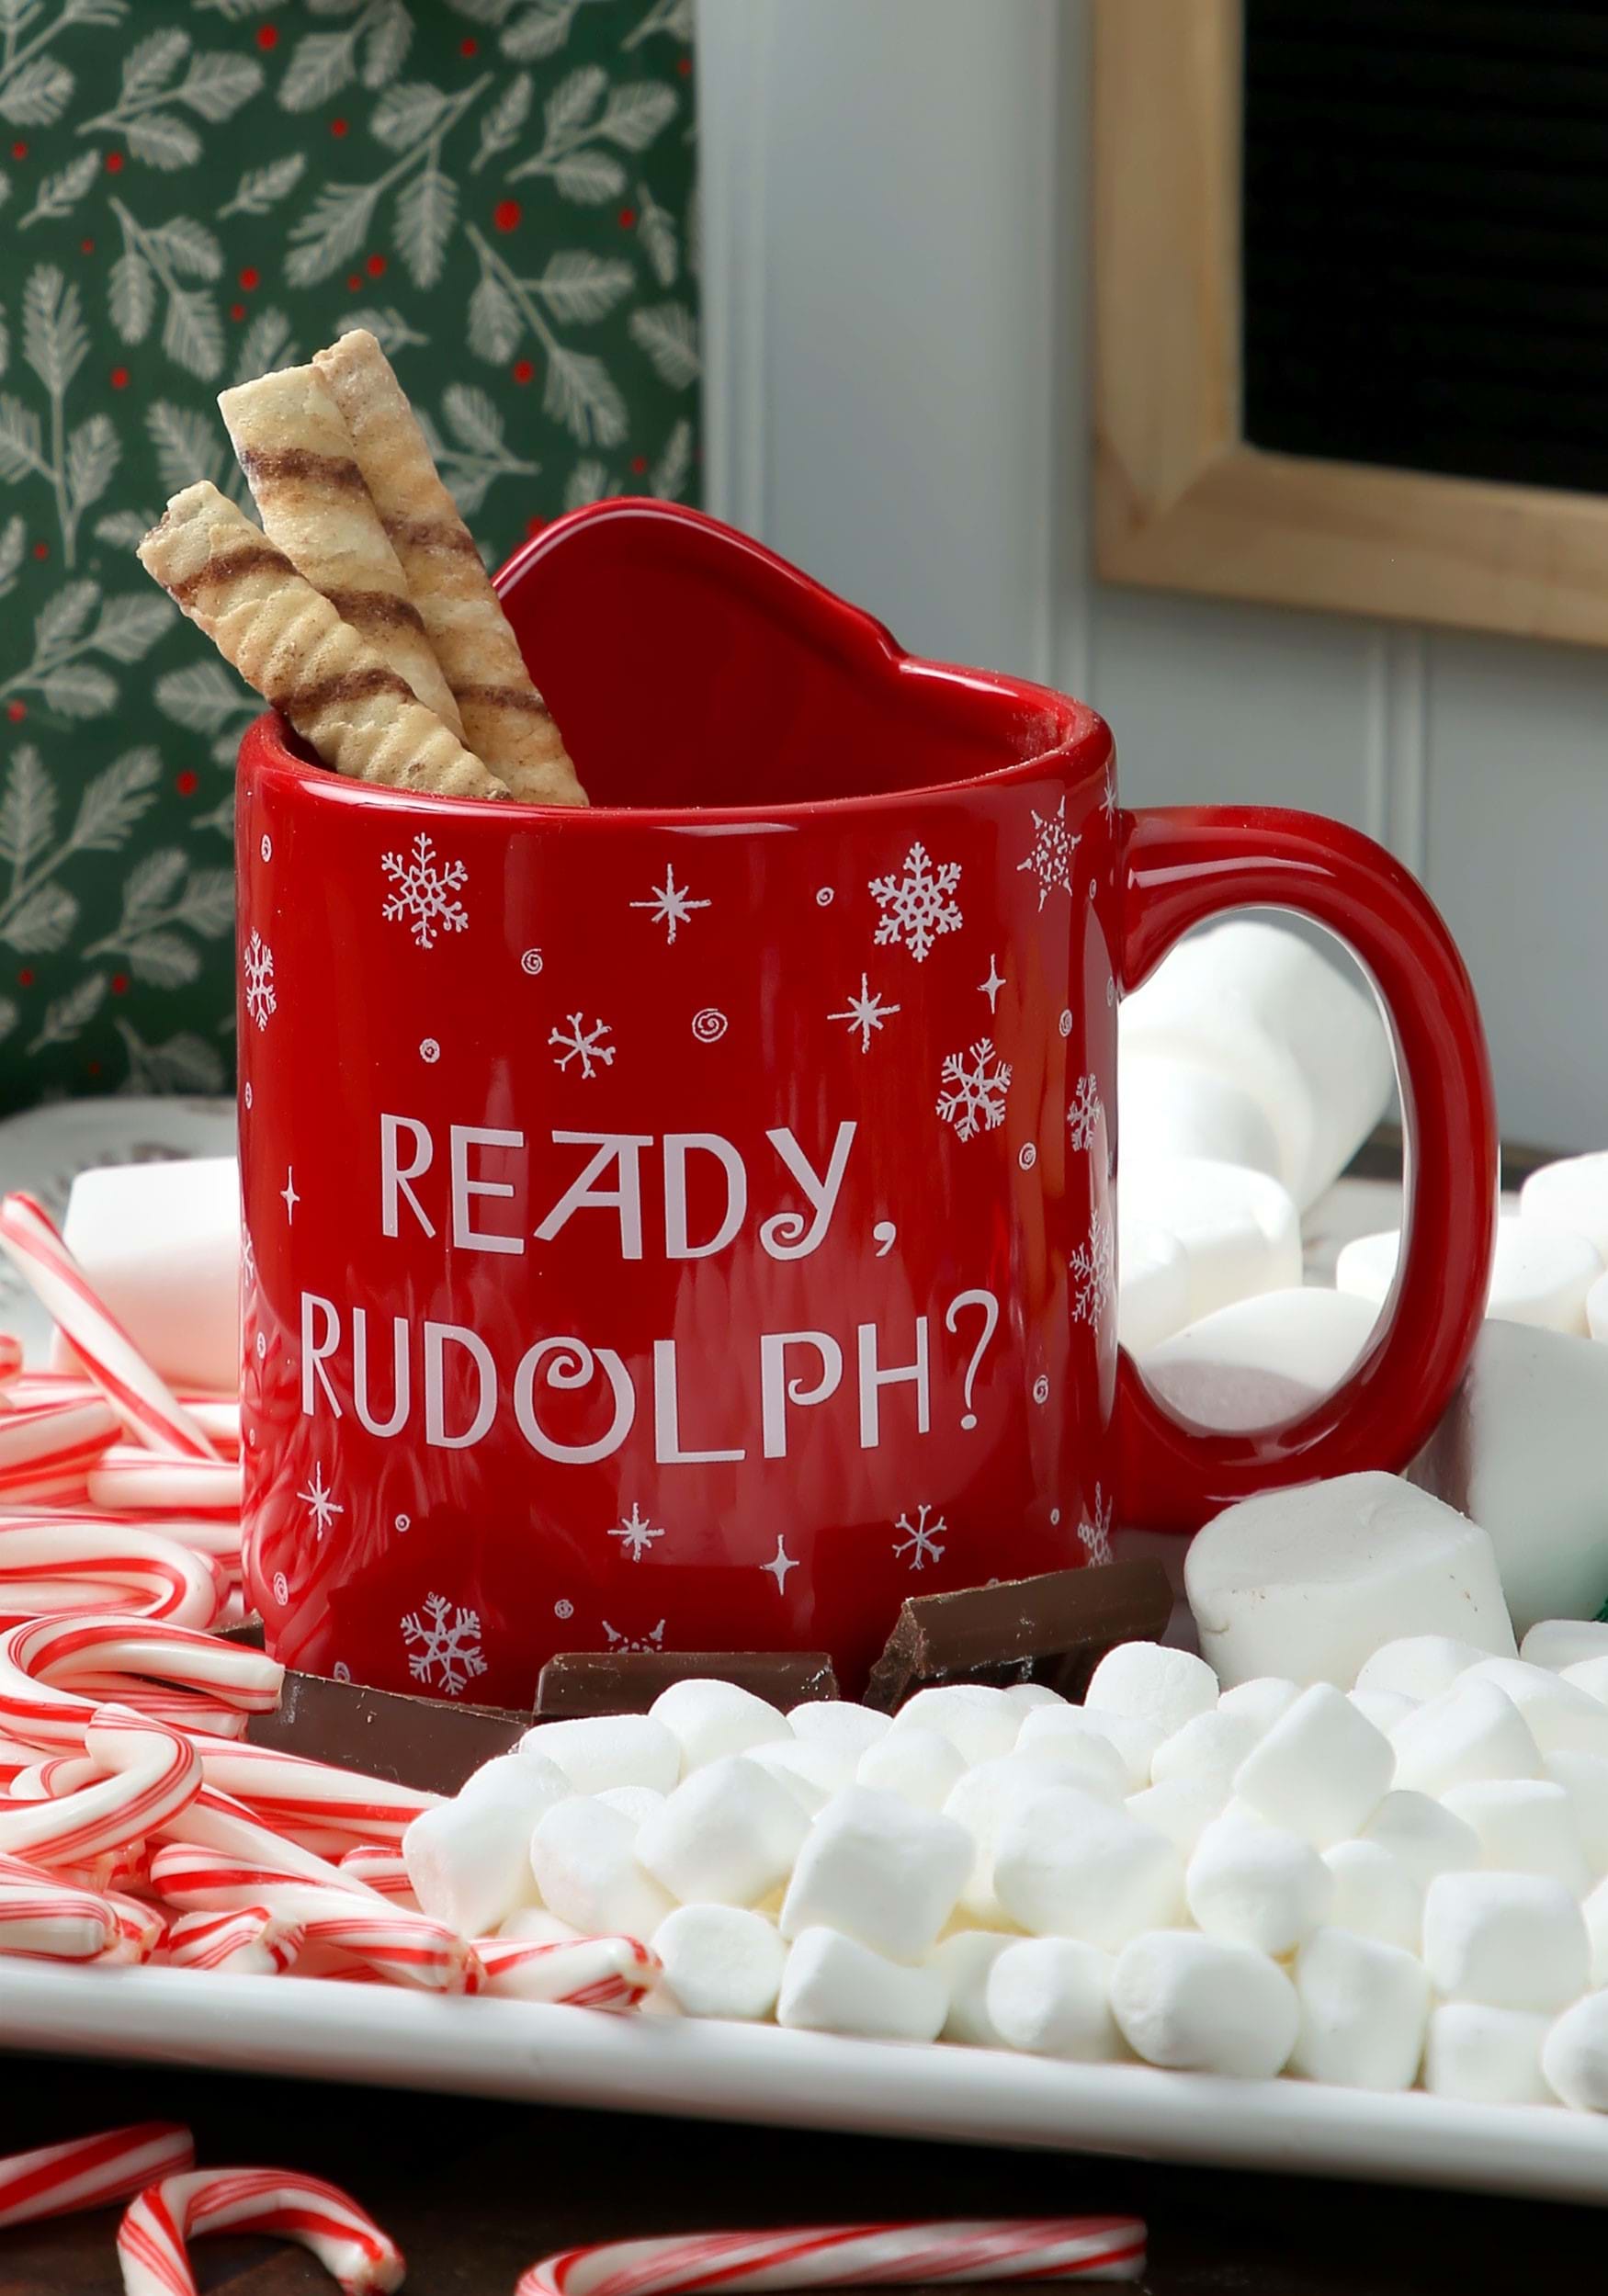 Rudolph Ready Rudolph 16 Oz. Bas-relief Ceramic Mug